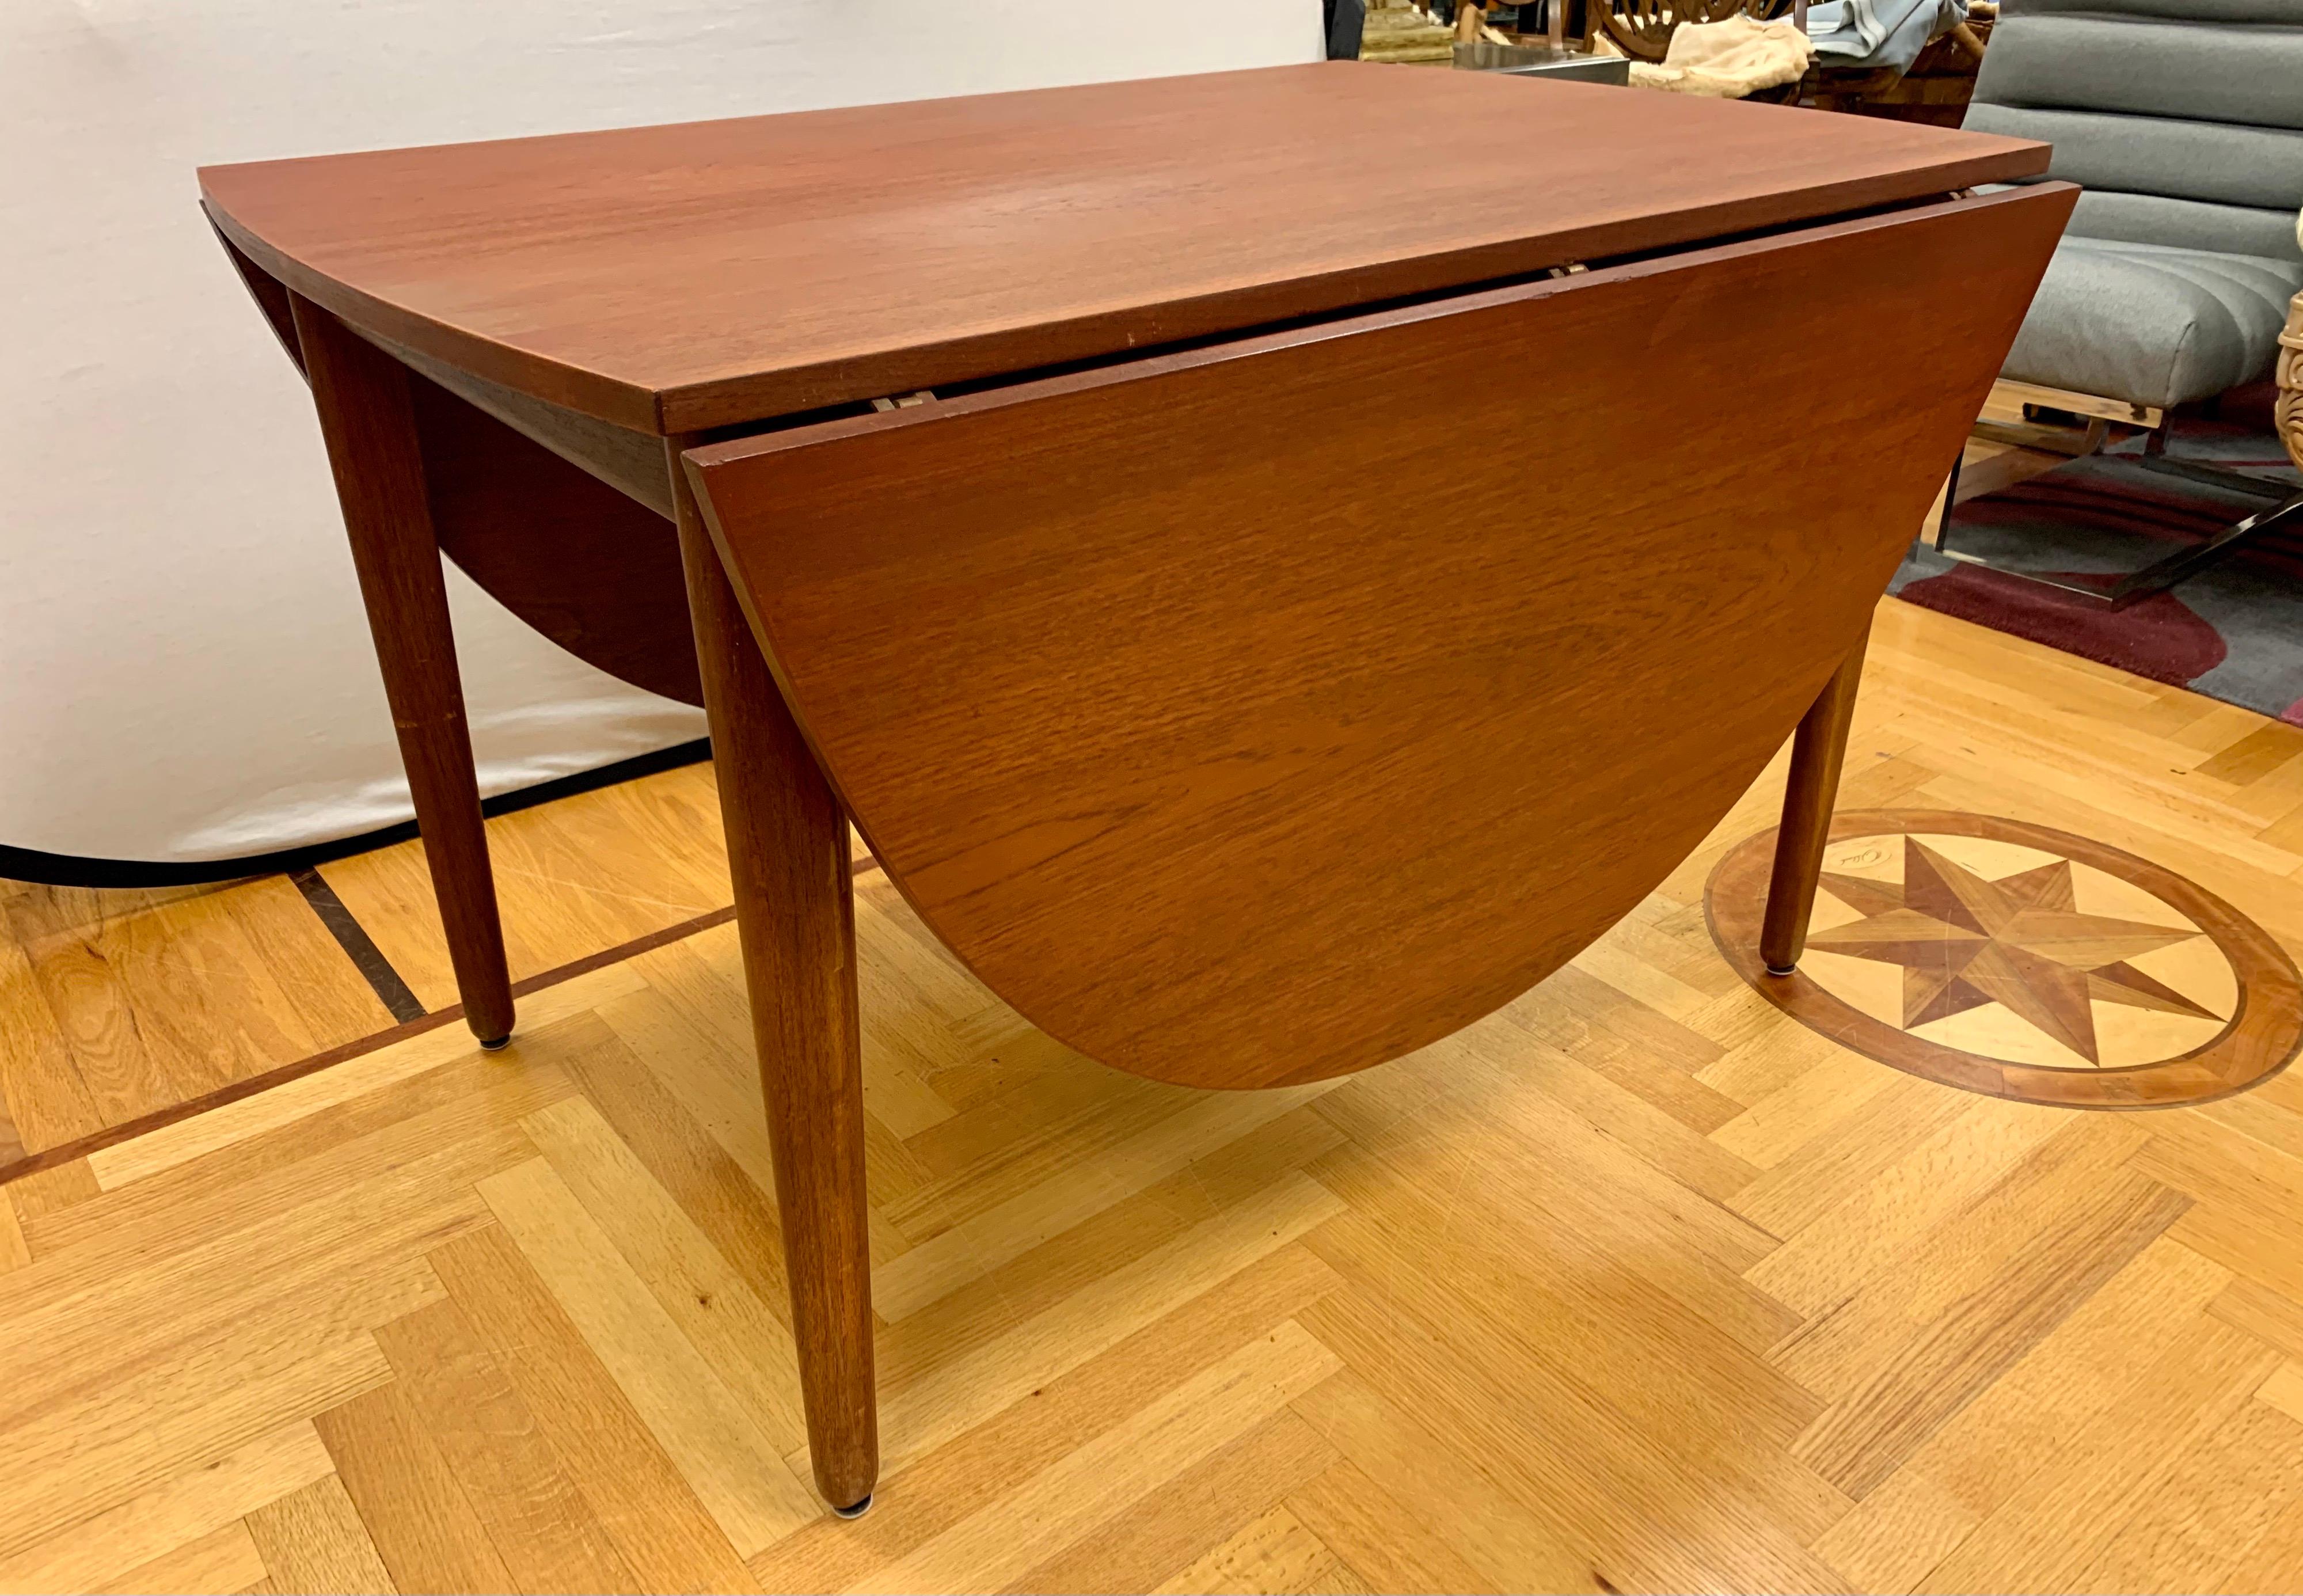 Teak Signed Dining Table by Arne Vodder for Vamo 1958 Danish Mid-Century Modern